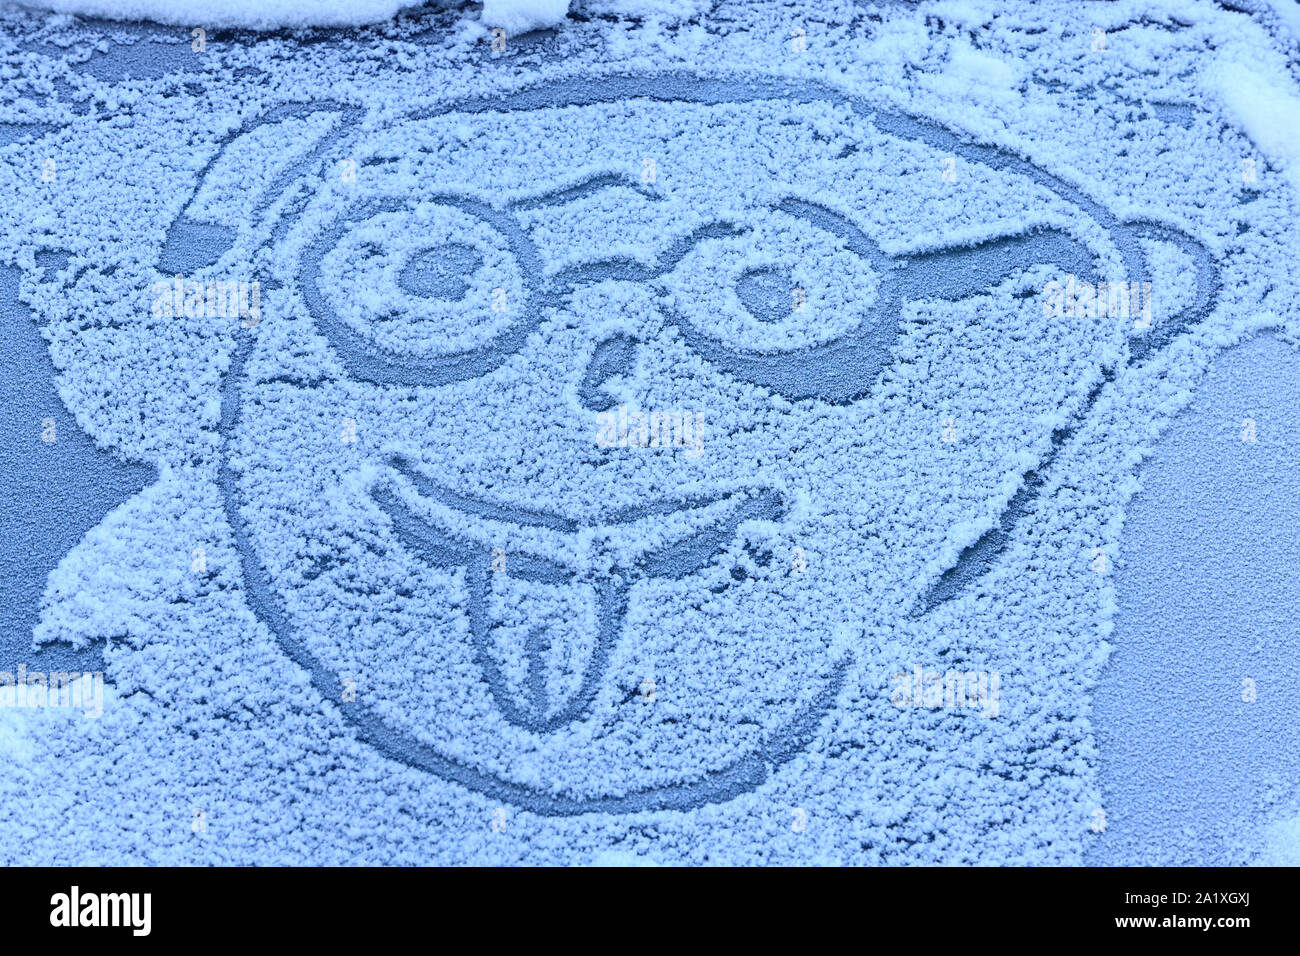 Illustration d'un personnage qui tire la langue sur le pare-brise d'une voiture enneigée. Chamonix. Haute-Savoie. Frankreich. Stockfoto